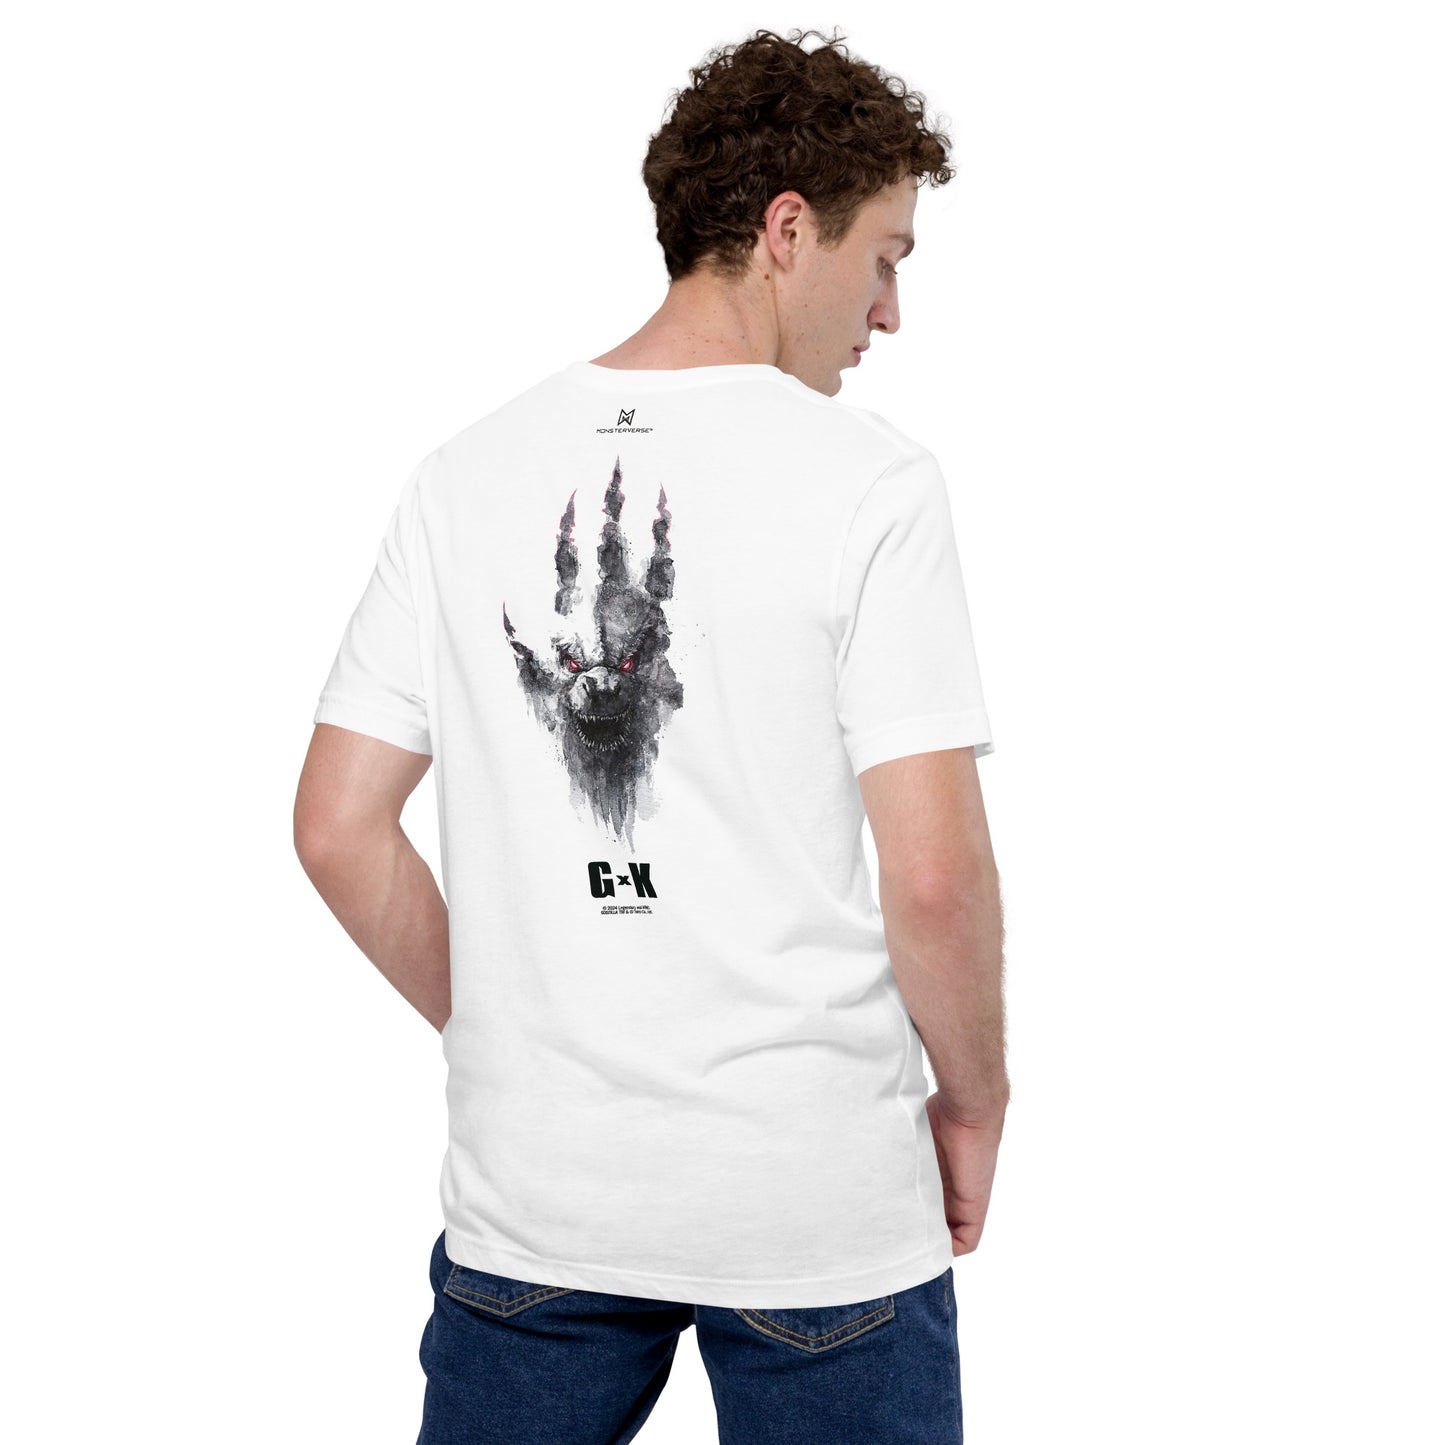 Monsterverse Godzilla x Kong: The New Empire Godzilla Unite Adult T-Shirt